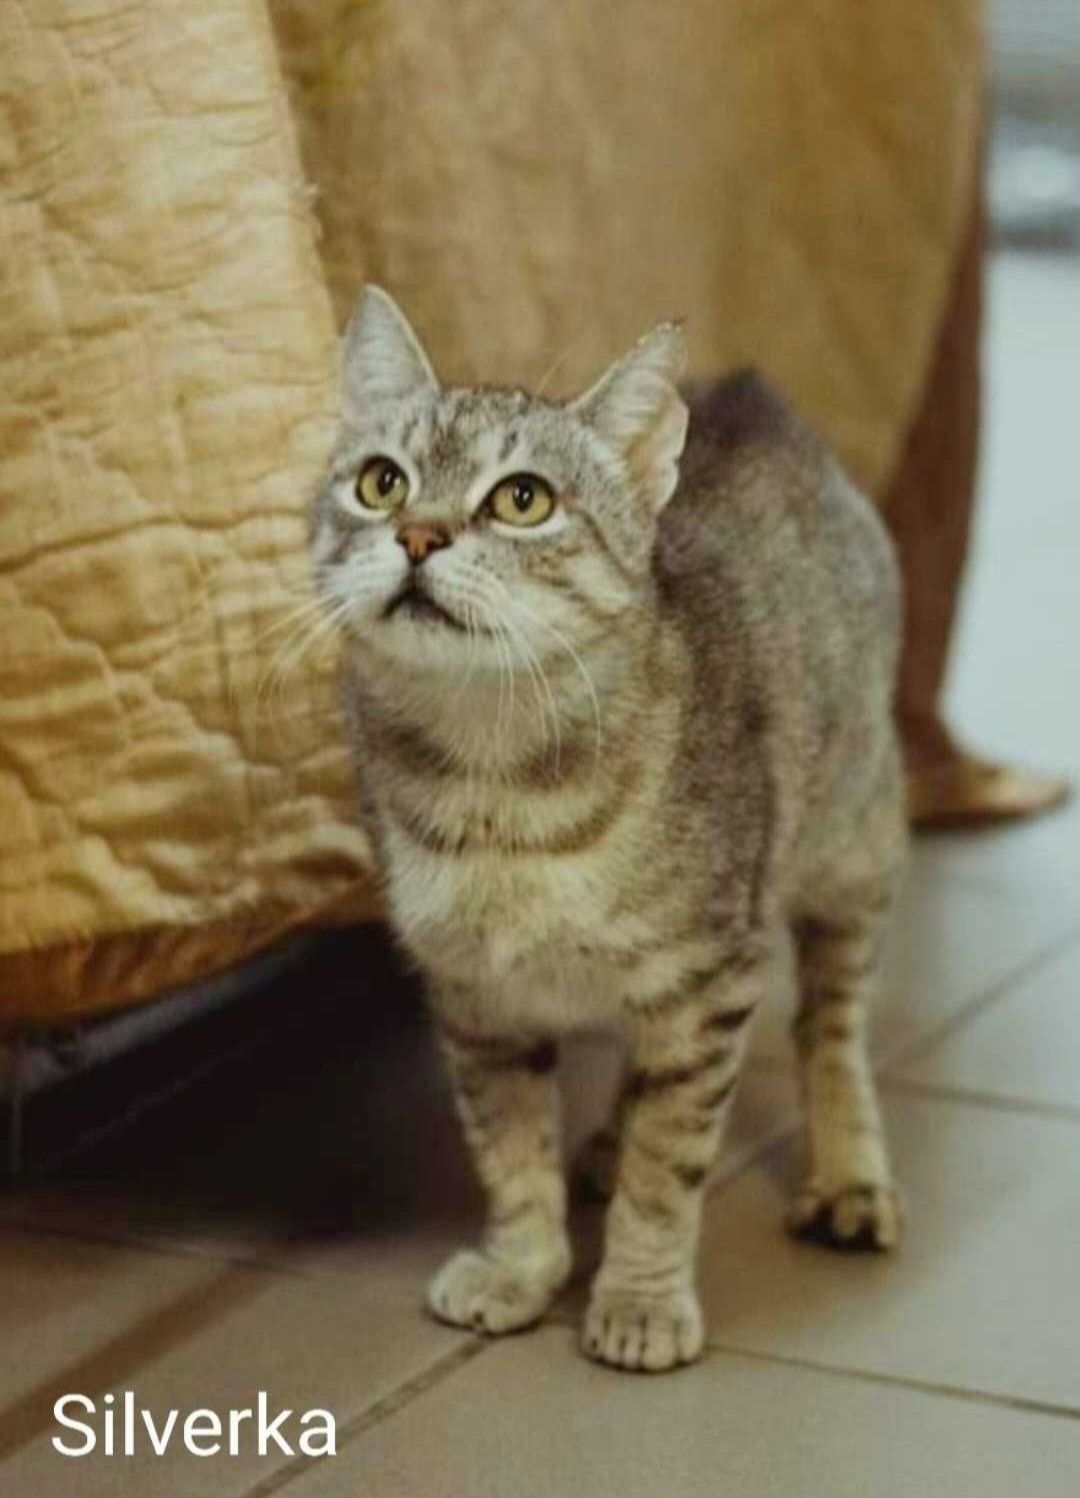 Silverka- kotka bez ogonka szuka domu